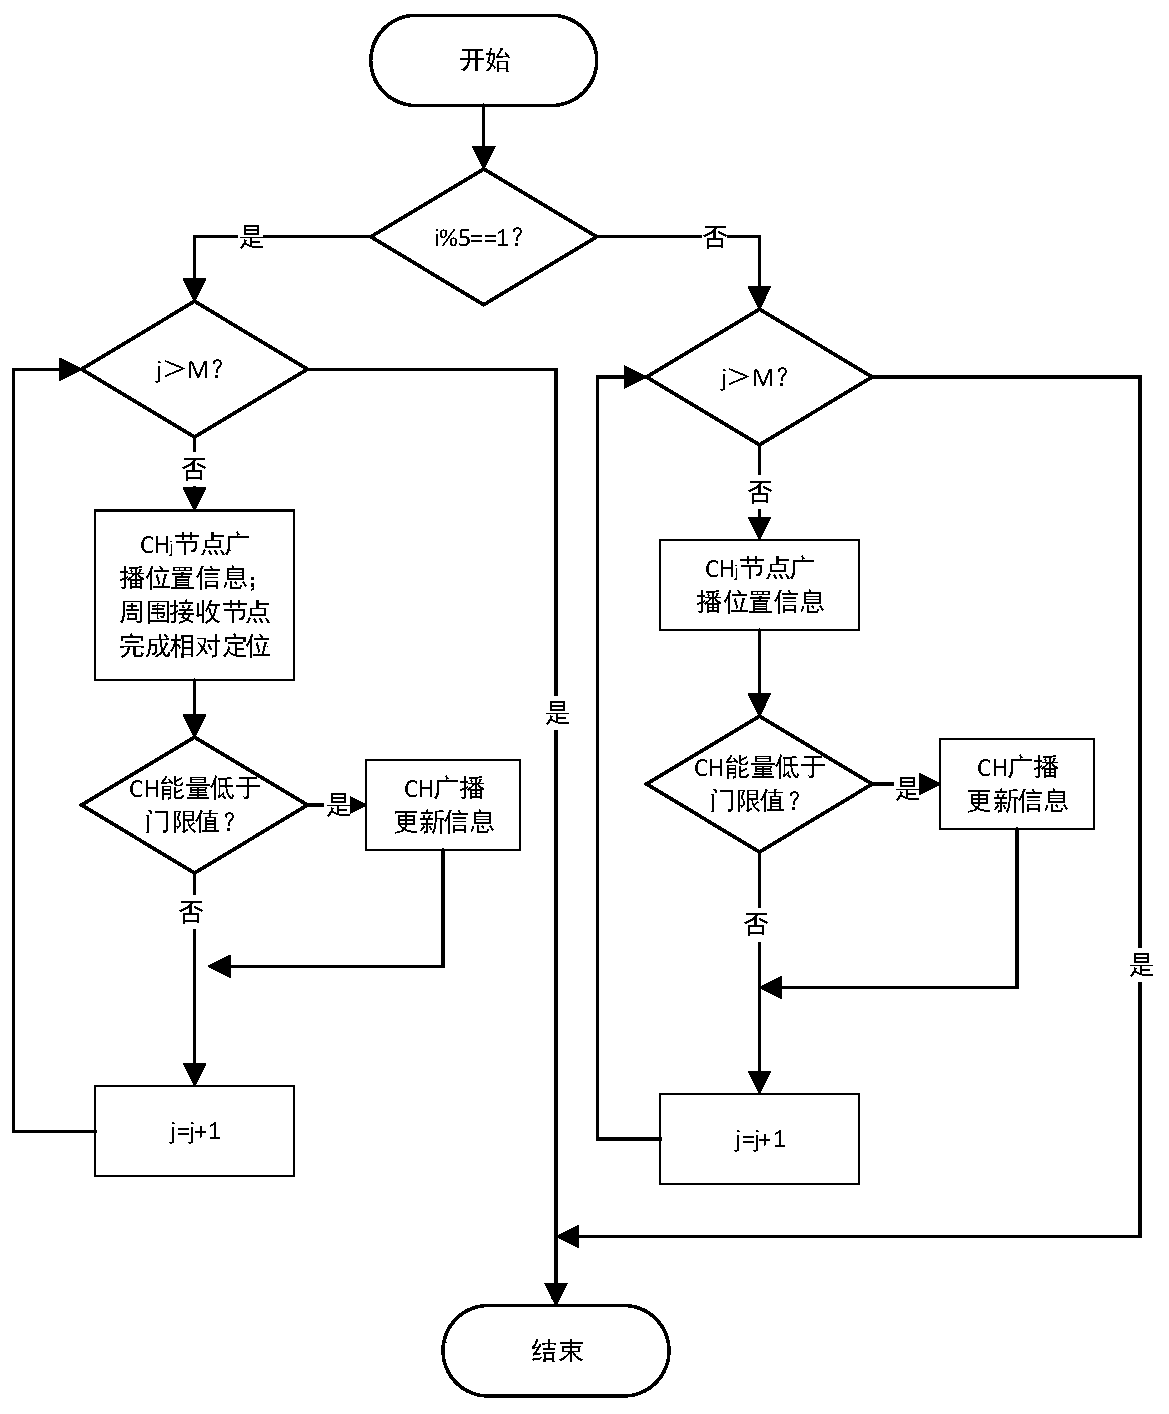 Hybrid MAC protocol optimization design method based on wireless optical communication